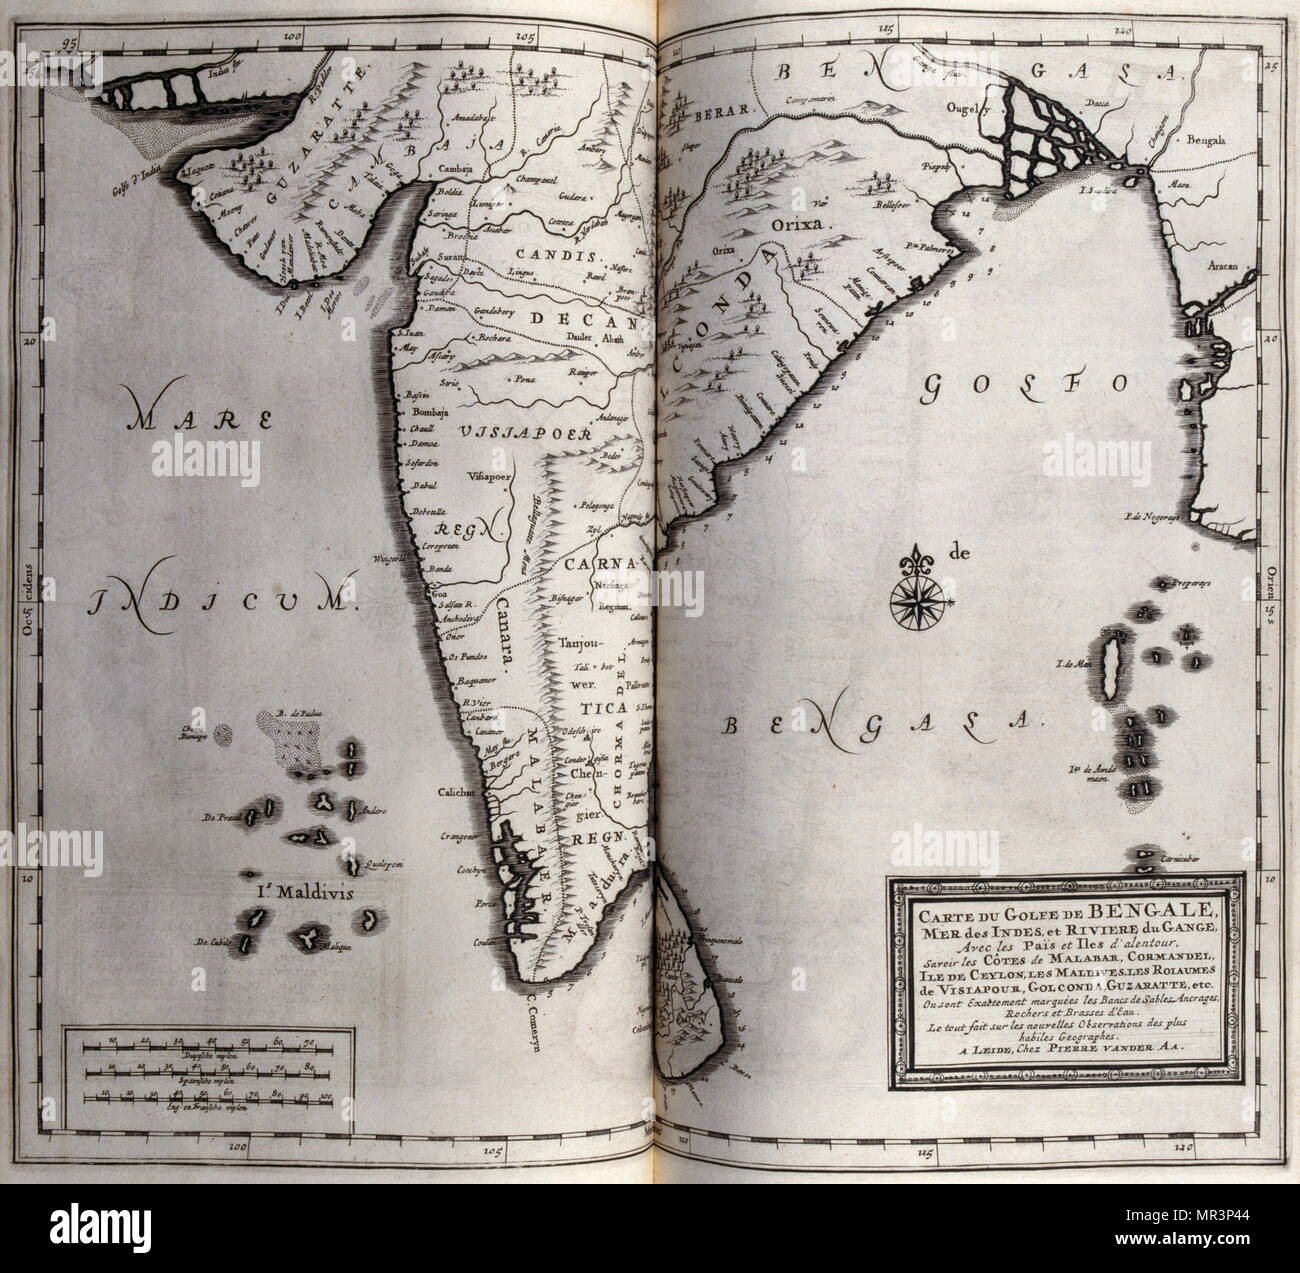 Mappa del golfo del Bengala, India 1727. Da viaggi fatti per la Persia e India 1727, da Johan Albrecht de Mandelslo (1616-1644). seicentesco avventuriero tedesco, che ha scritto circa i suoi viaggi attraverso la Persia e l'India. Foto Stock